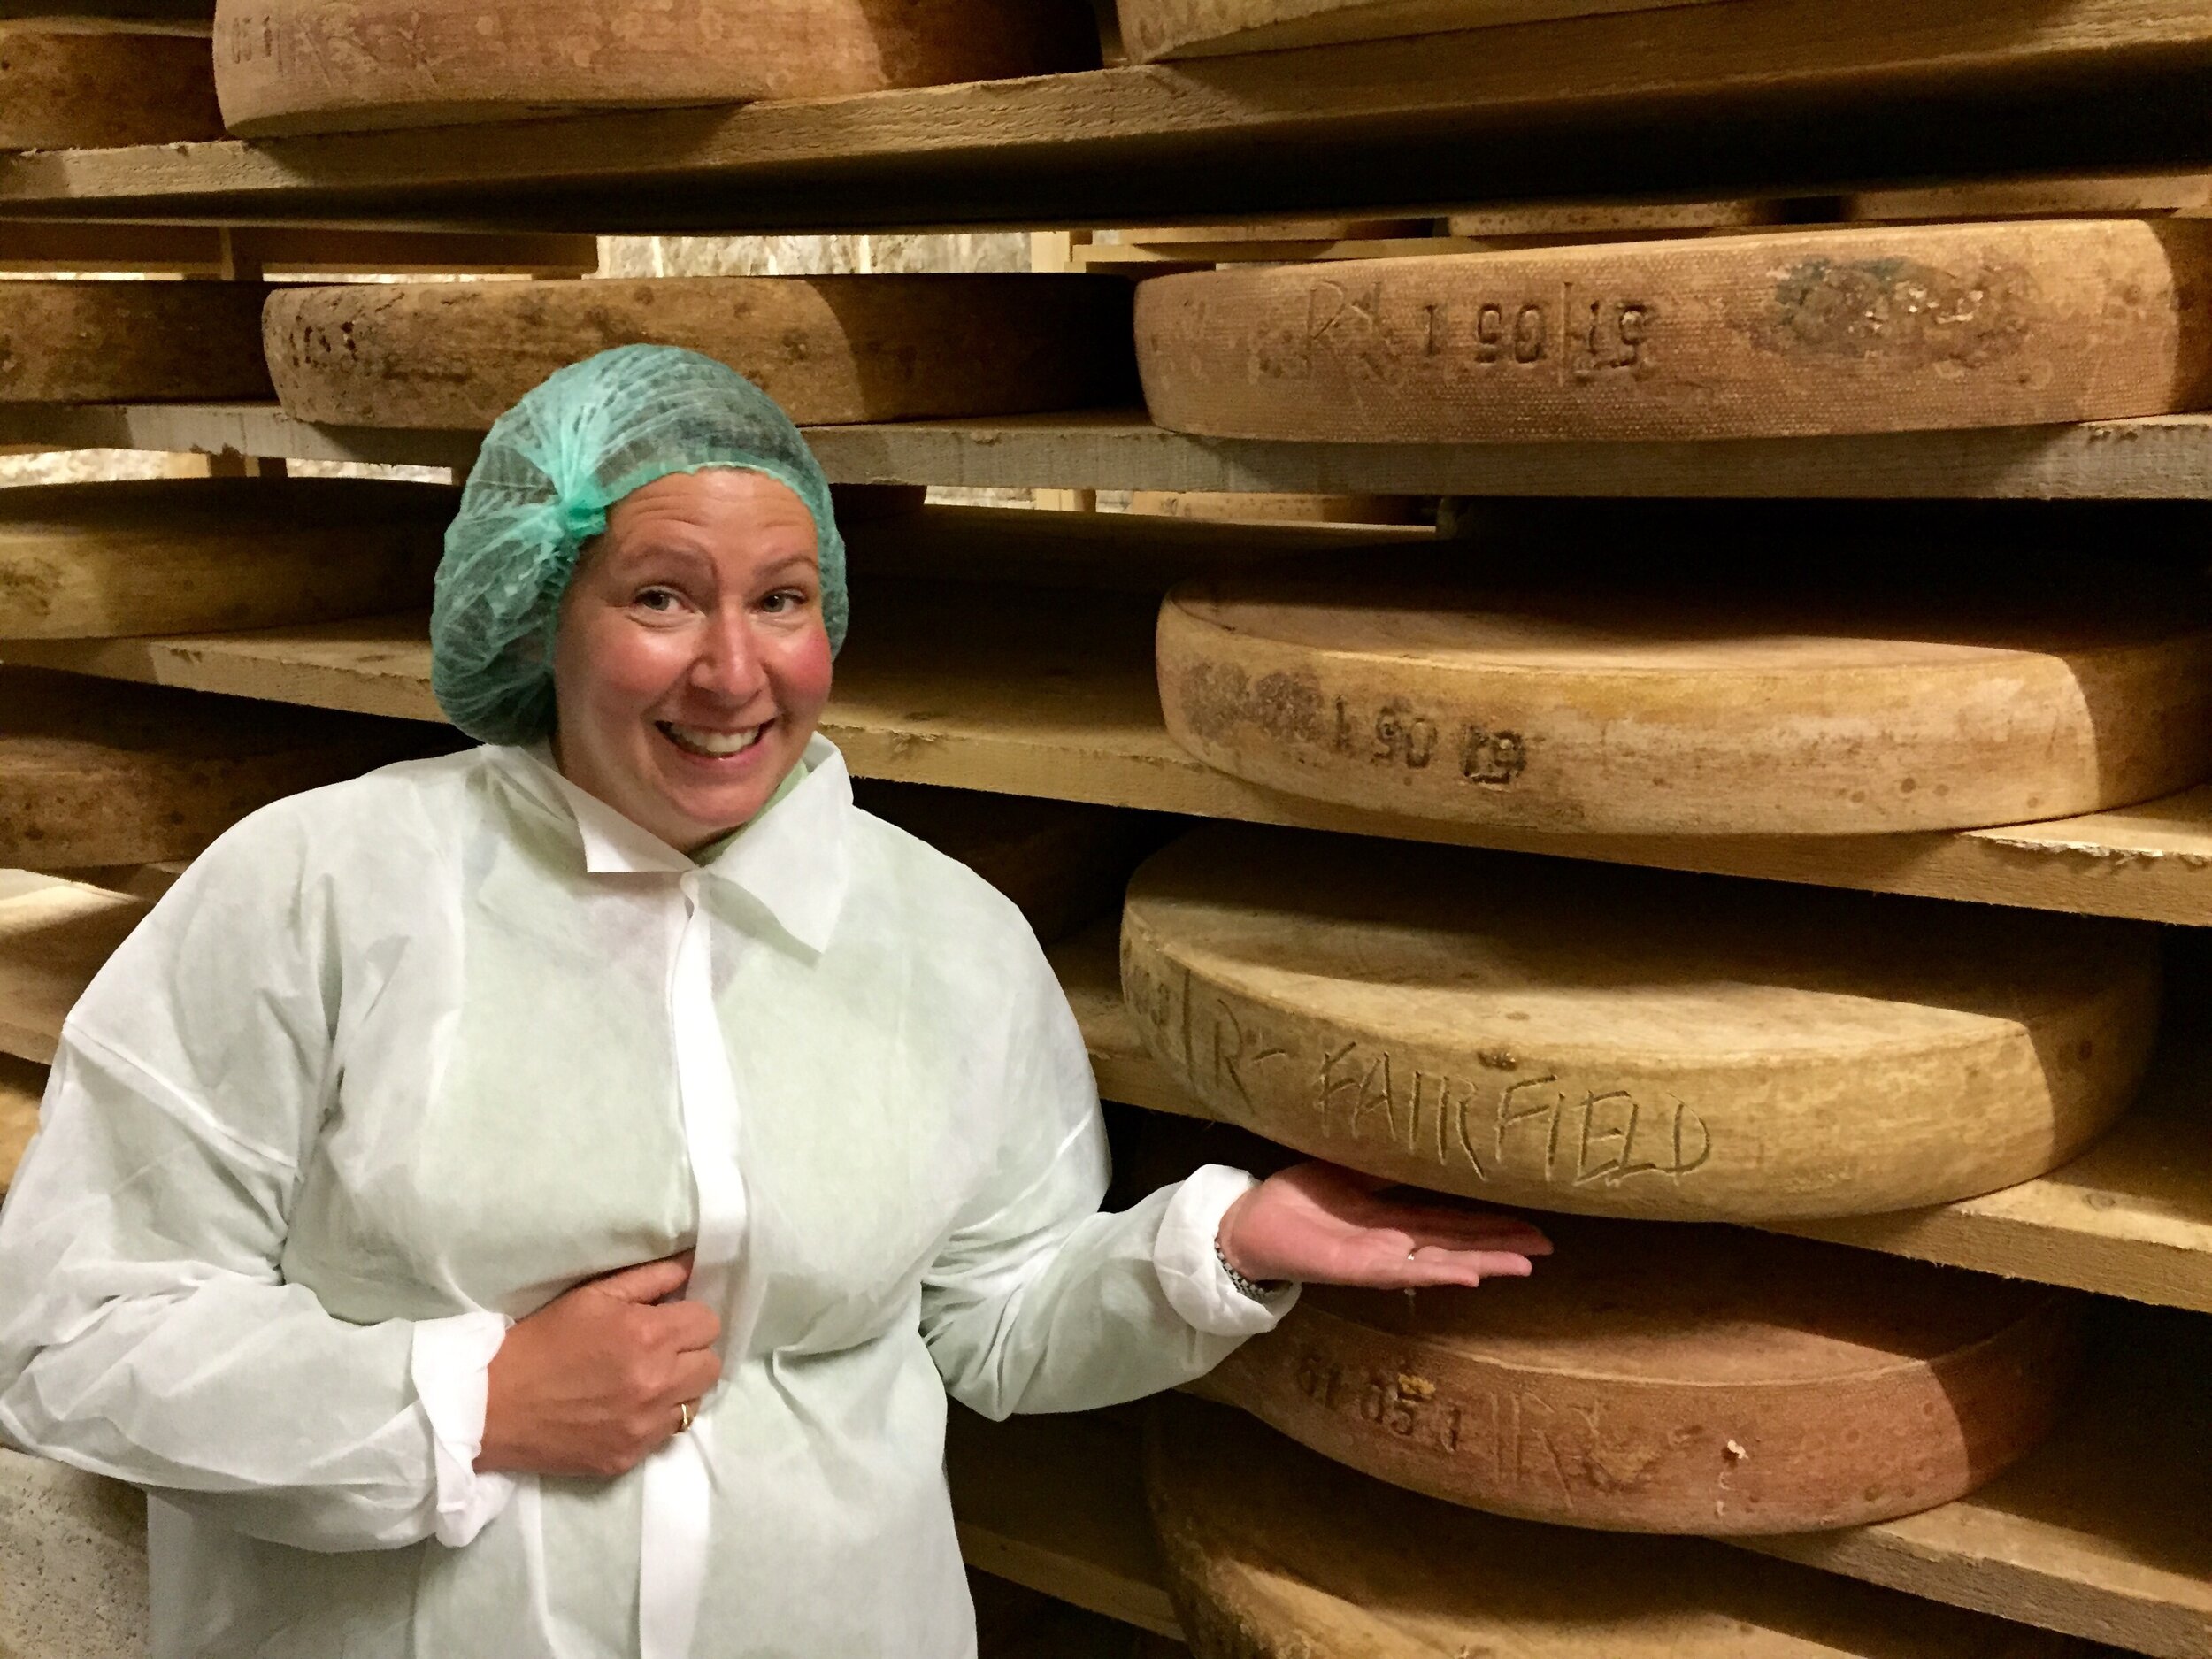 &lt;p&gt;&lt;strong&gt;Laura Downey&lt;/strong&gt;Co-owner, Buyer, Cheesemonger&lt;a href=/laura-downey&gt;READ BIO&lt;/a&gt;&lt;/p&gt;